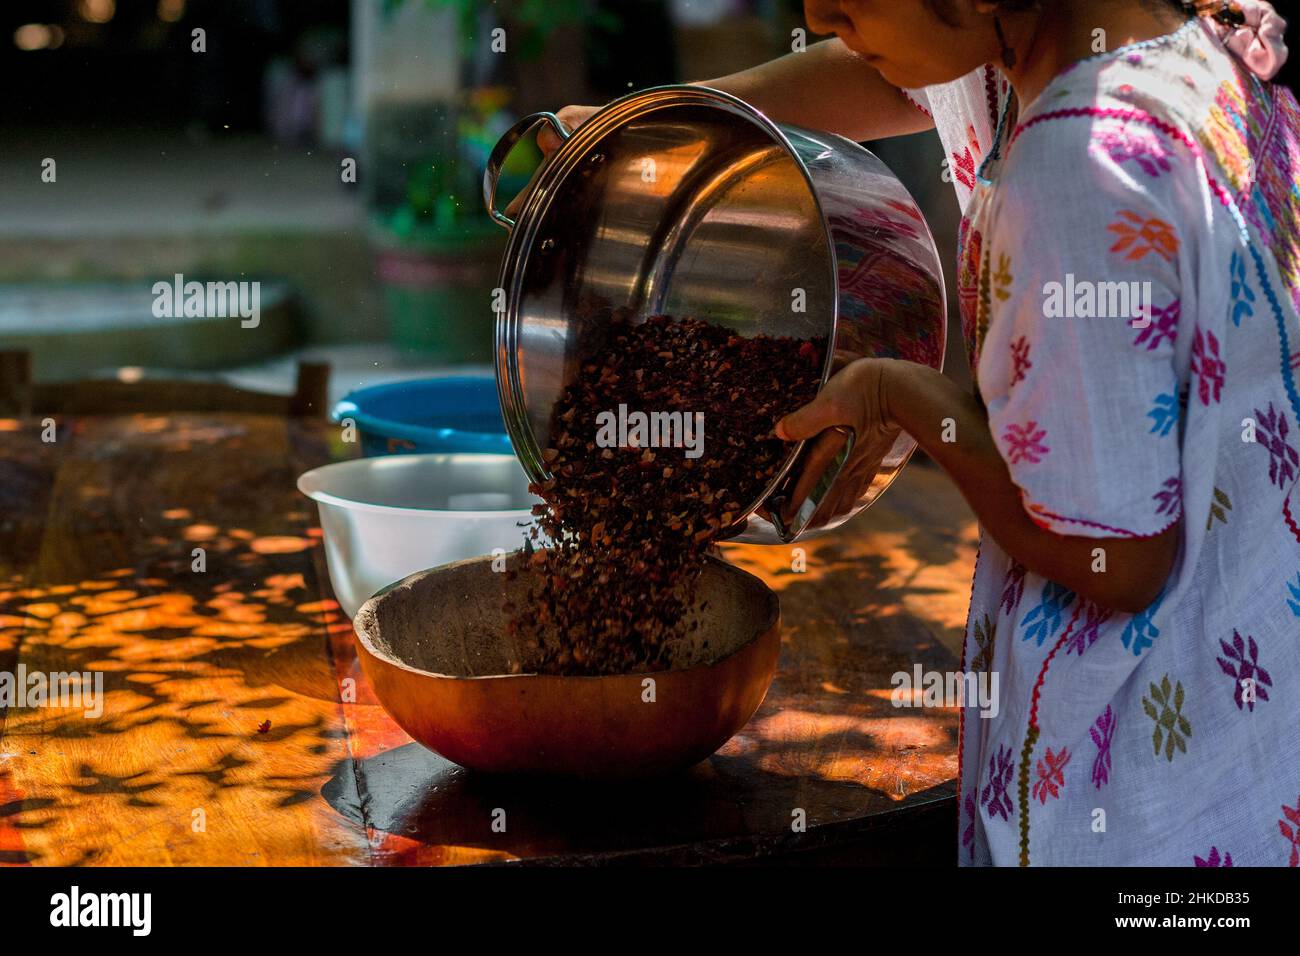 Una donna indigena getta i fagioli di cacao schiacciati da una pentola in una ciotola per la vinatura nella produzione artigianale di cioccolato in Xochistlahuaca, Messico. Foto Stock